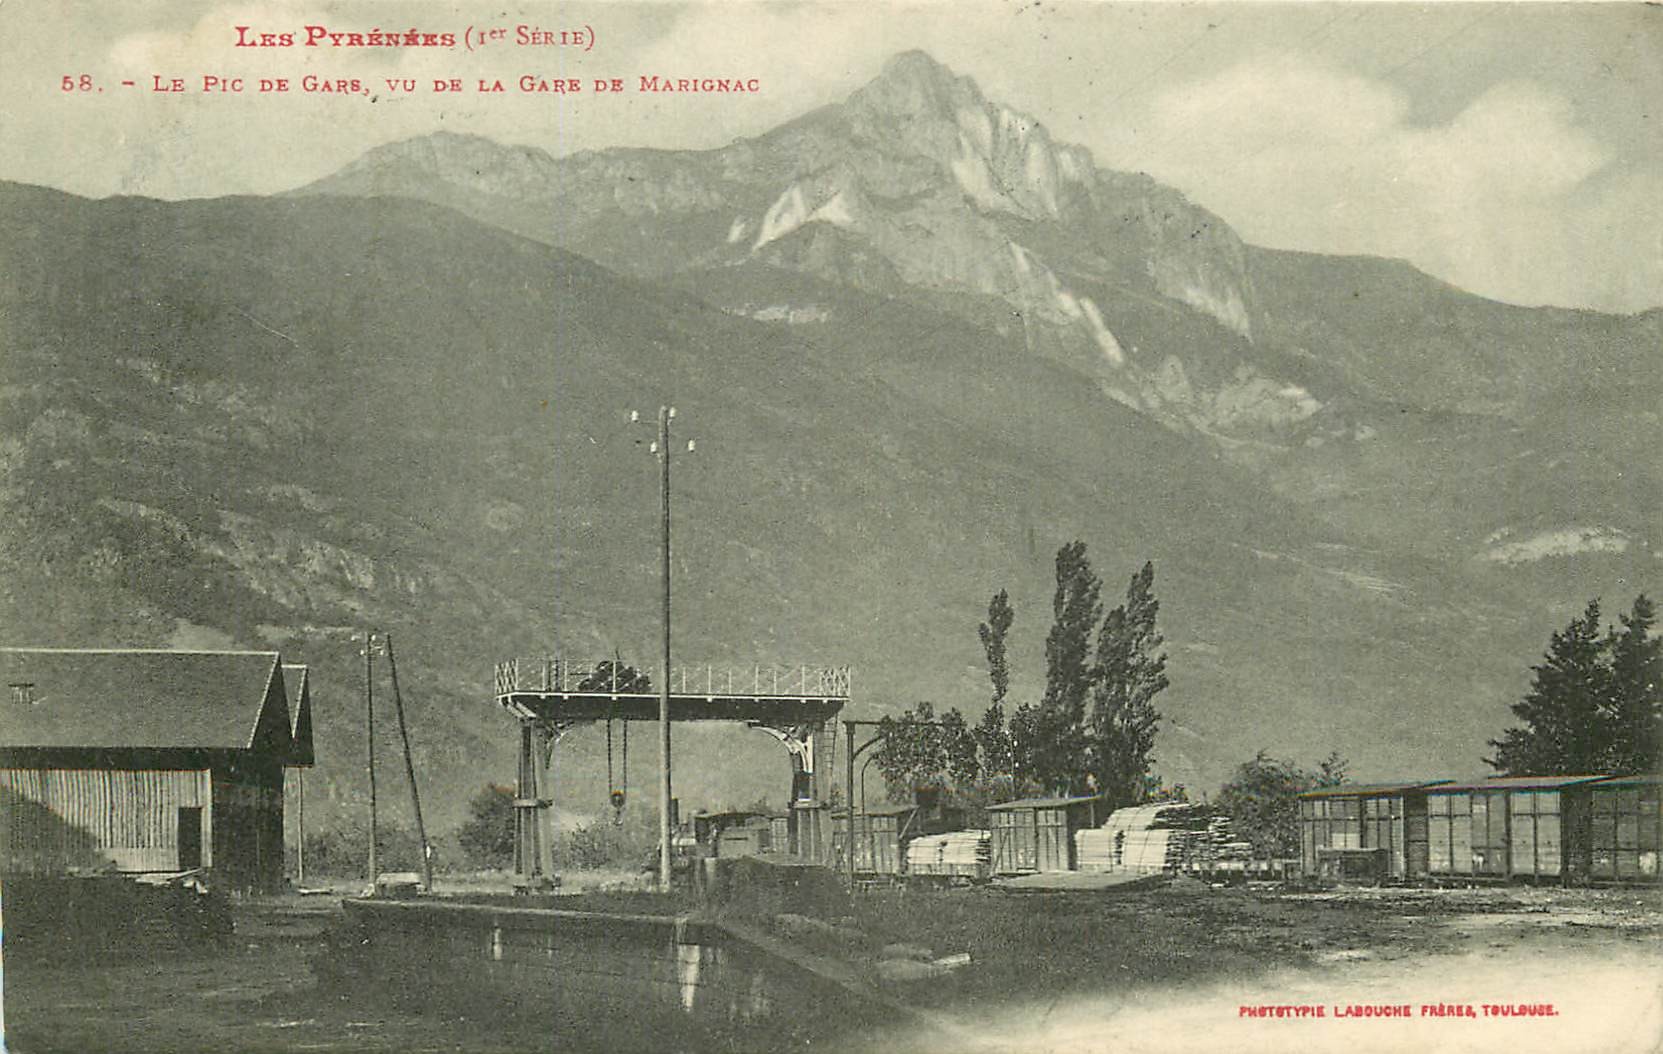 WW 31 La Gare de Marignac 1908